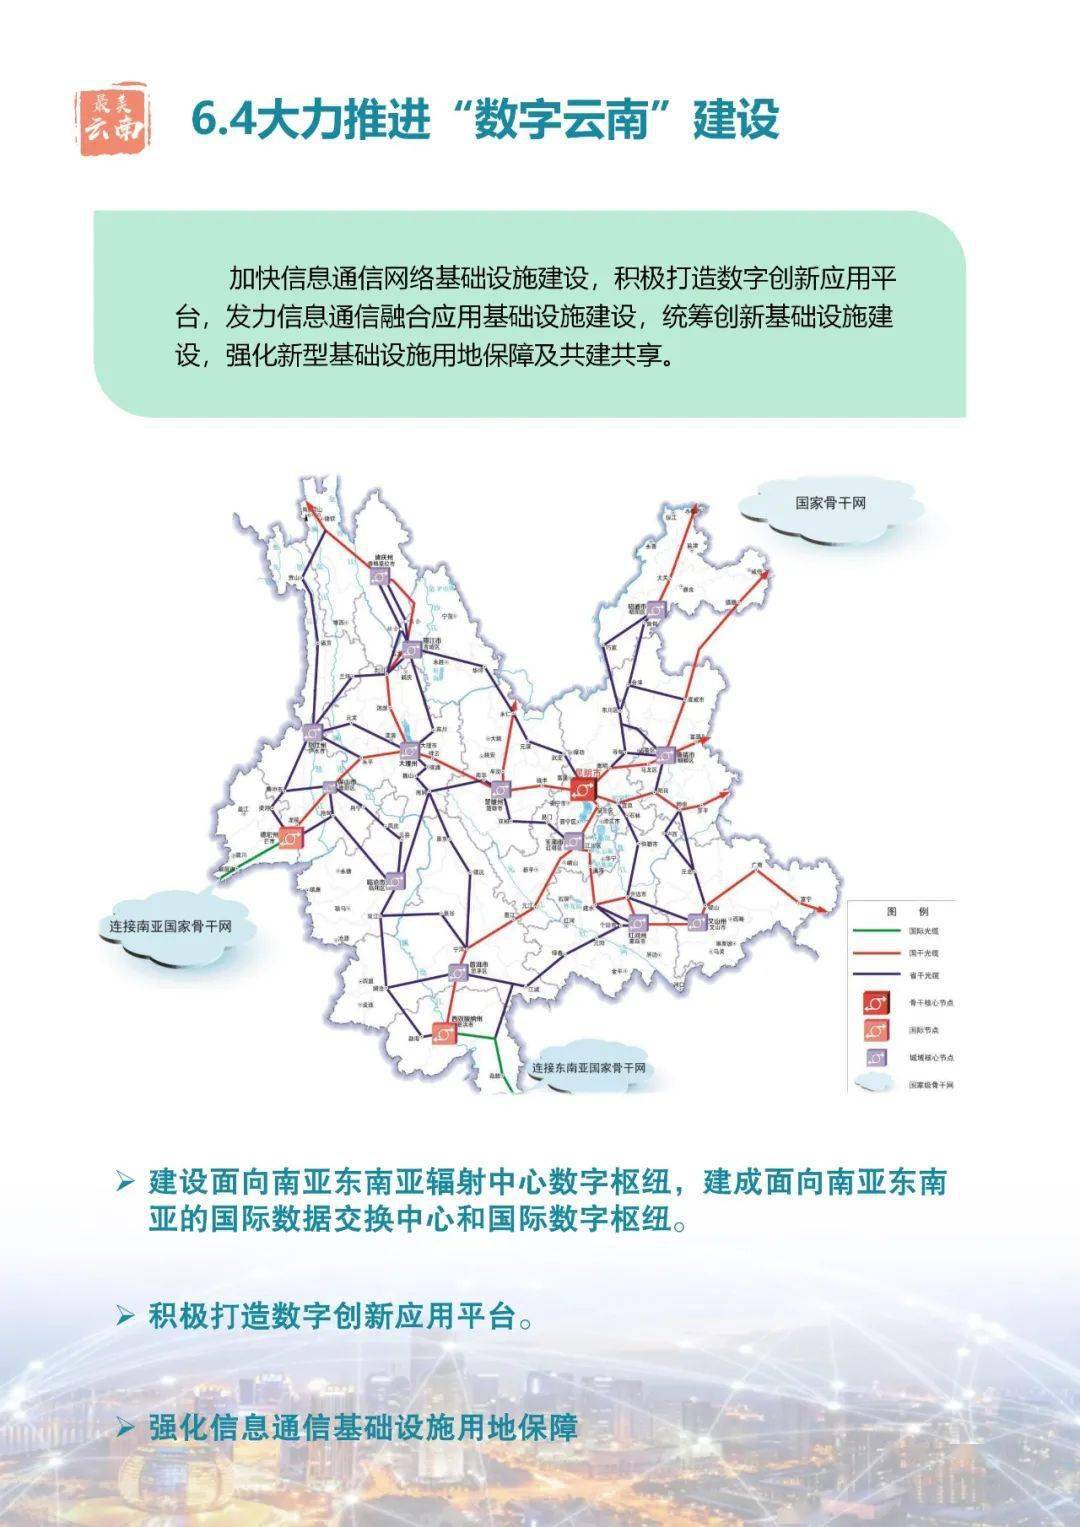 《云南省国土空间规划(2021-2035年)(公众征求意见稿)